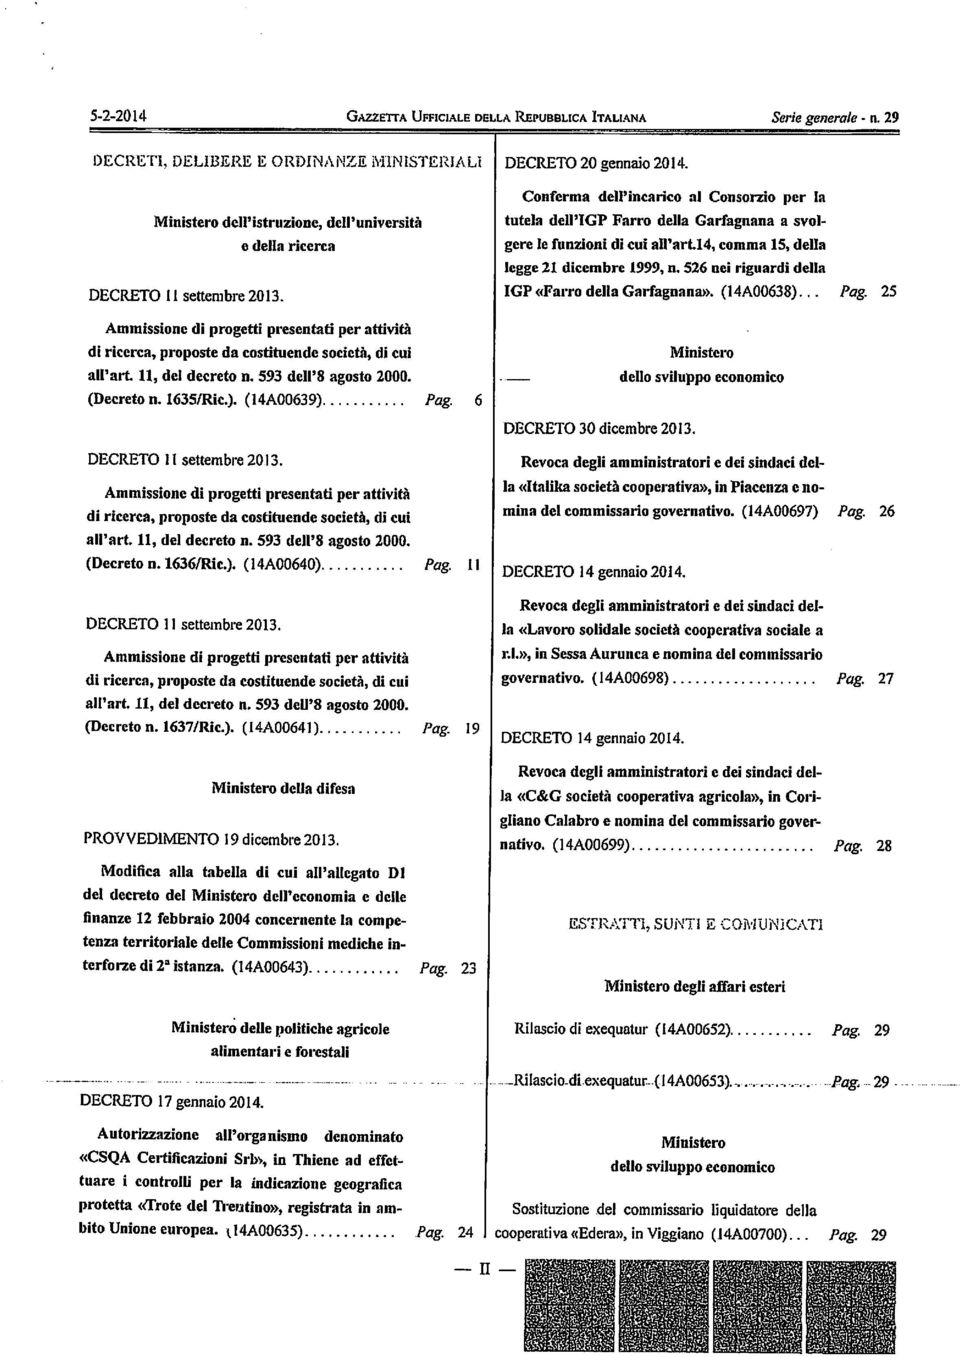 e della ricerca tutela dell'igp Farro della Garfagnana a svol gere le funzioni di cui all'art.14, comma 15, della legge 21 dicembre 1999, n. 526 nei riguardi della IGP «Farro della Garfagnana».